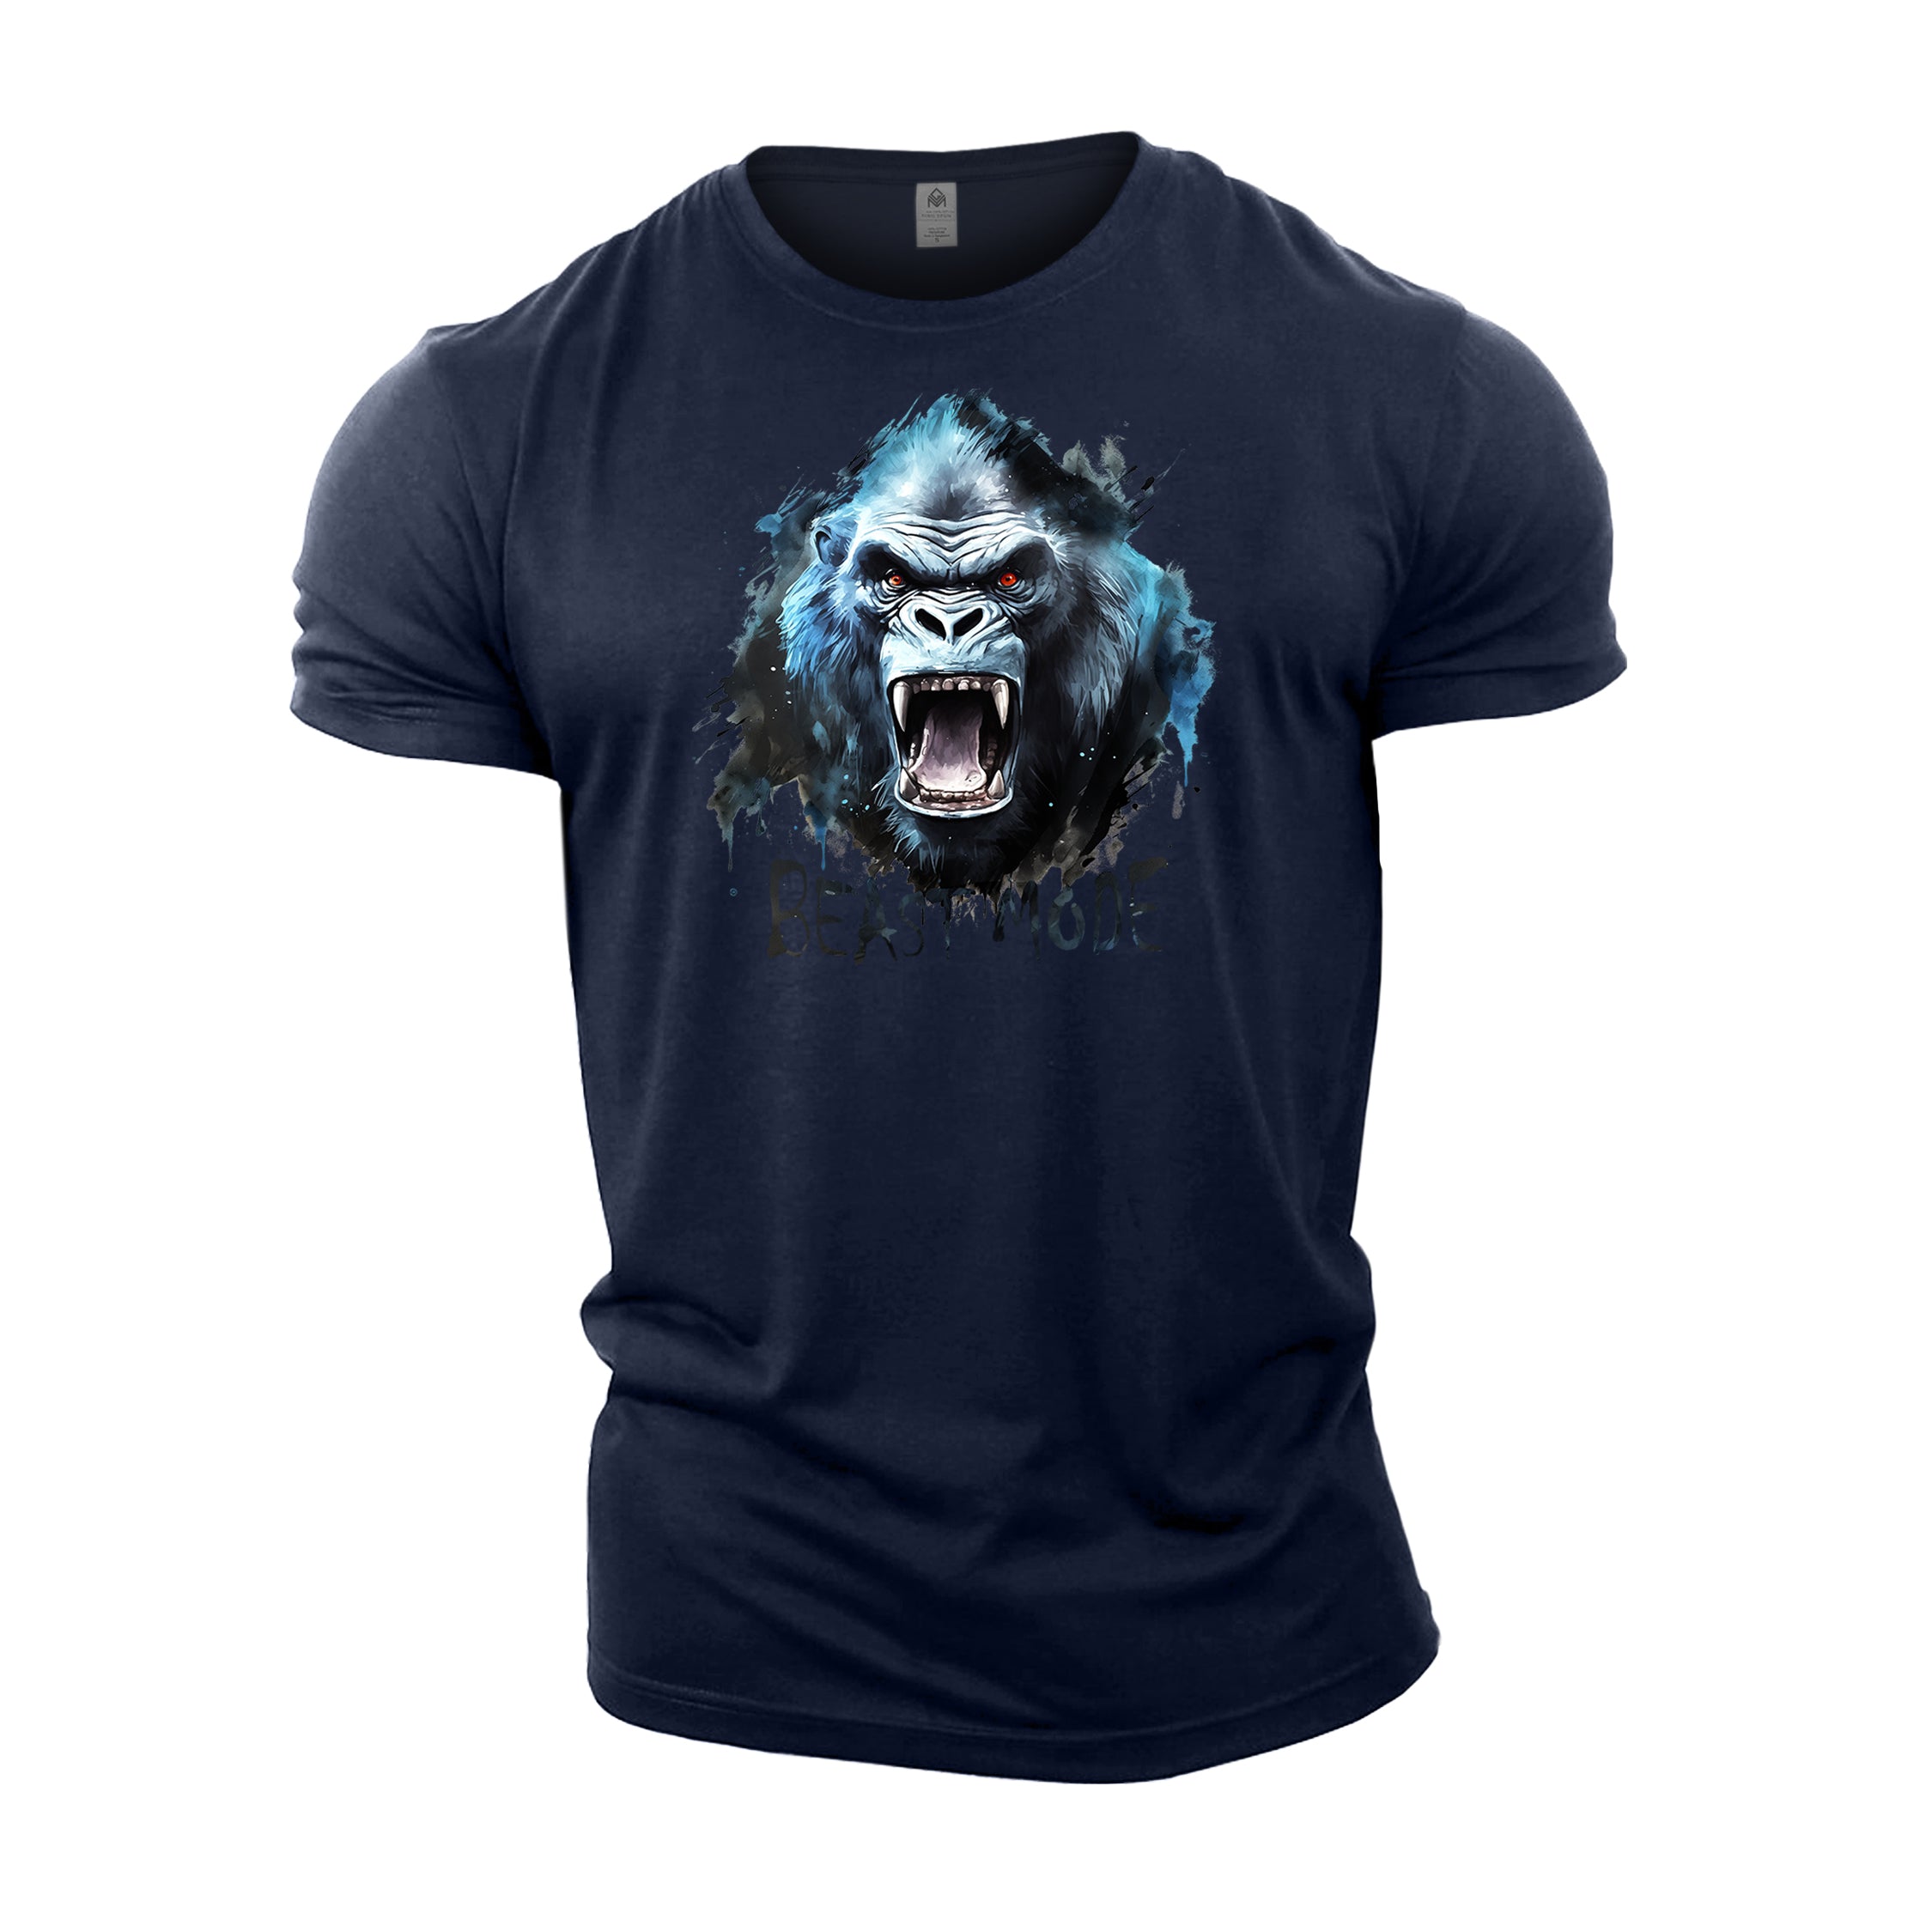 Gorilla Beast Mode - Gym T-Shirt